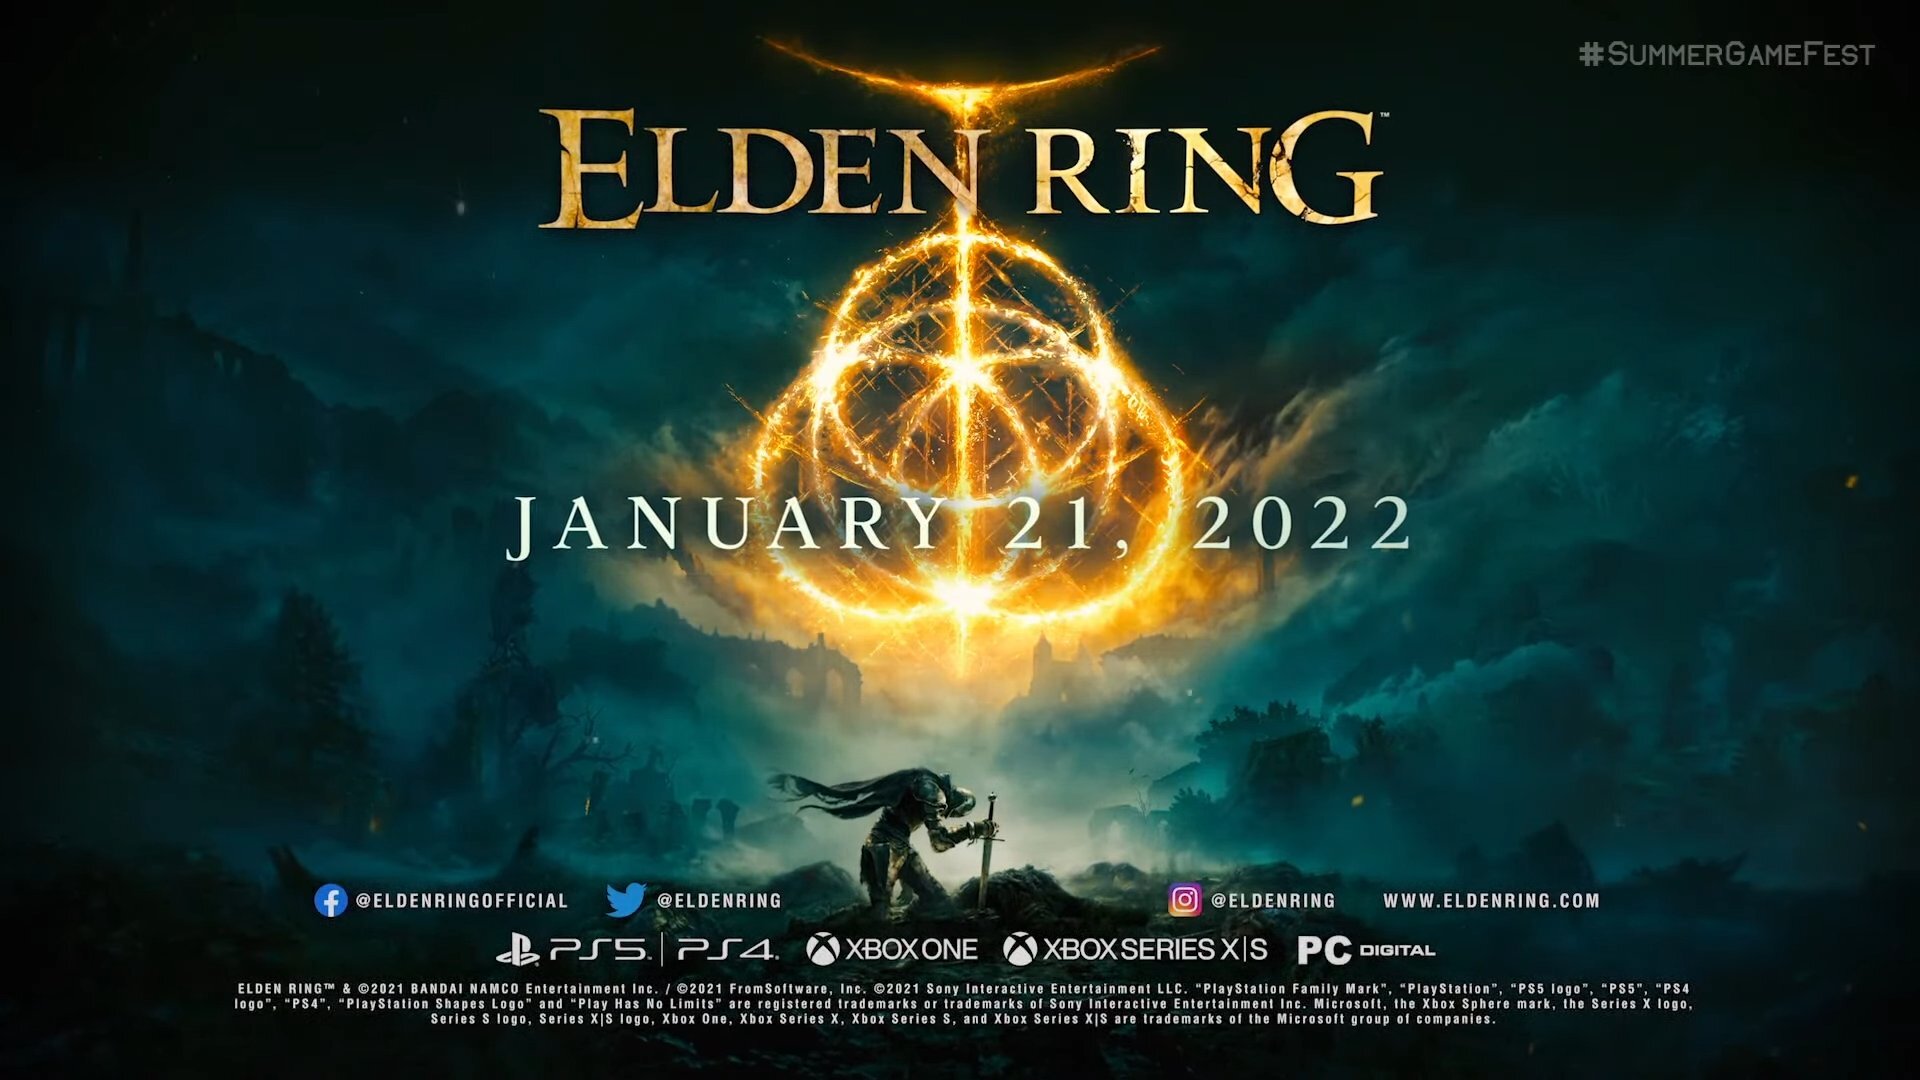 elden ring release date